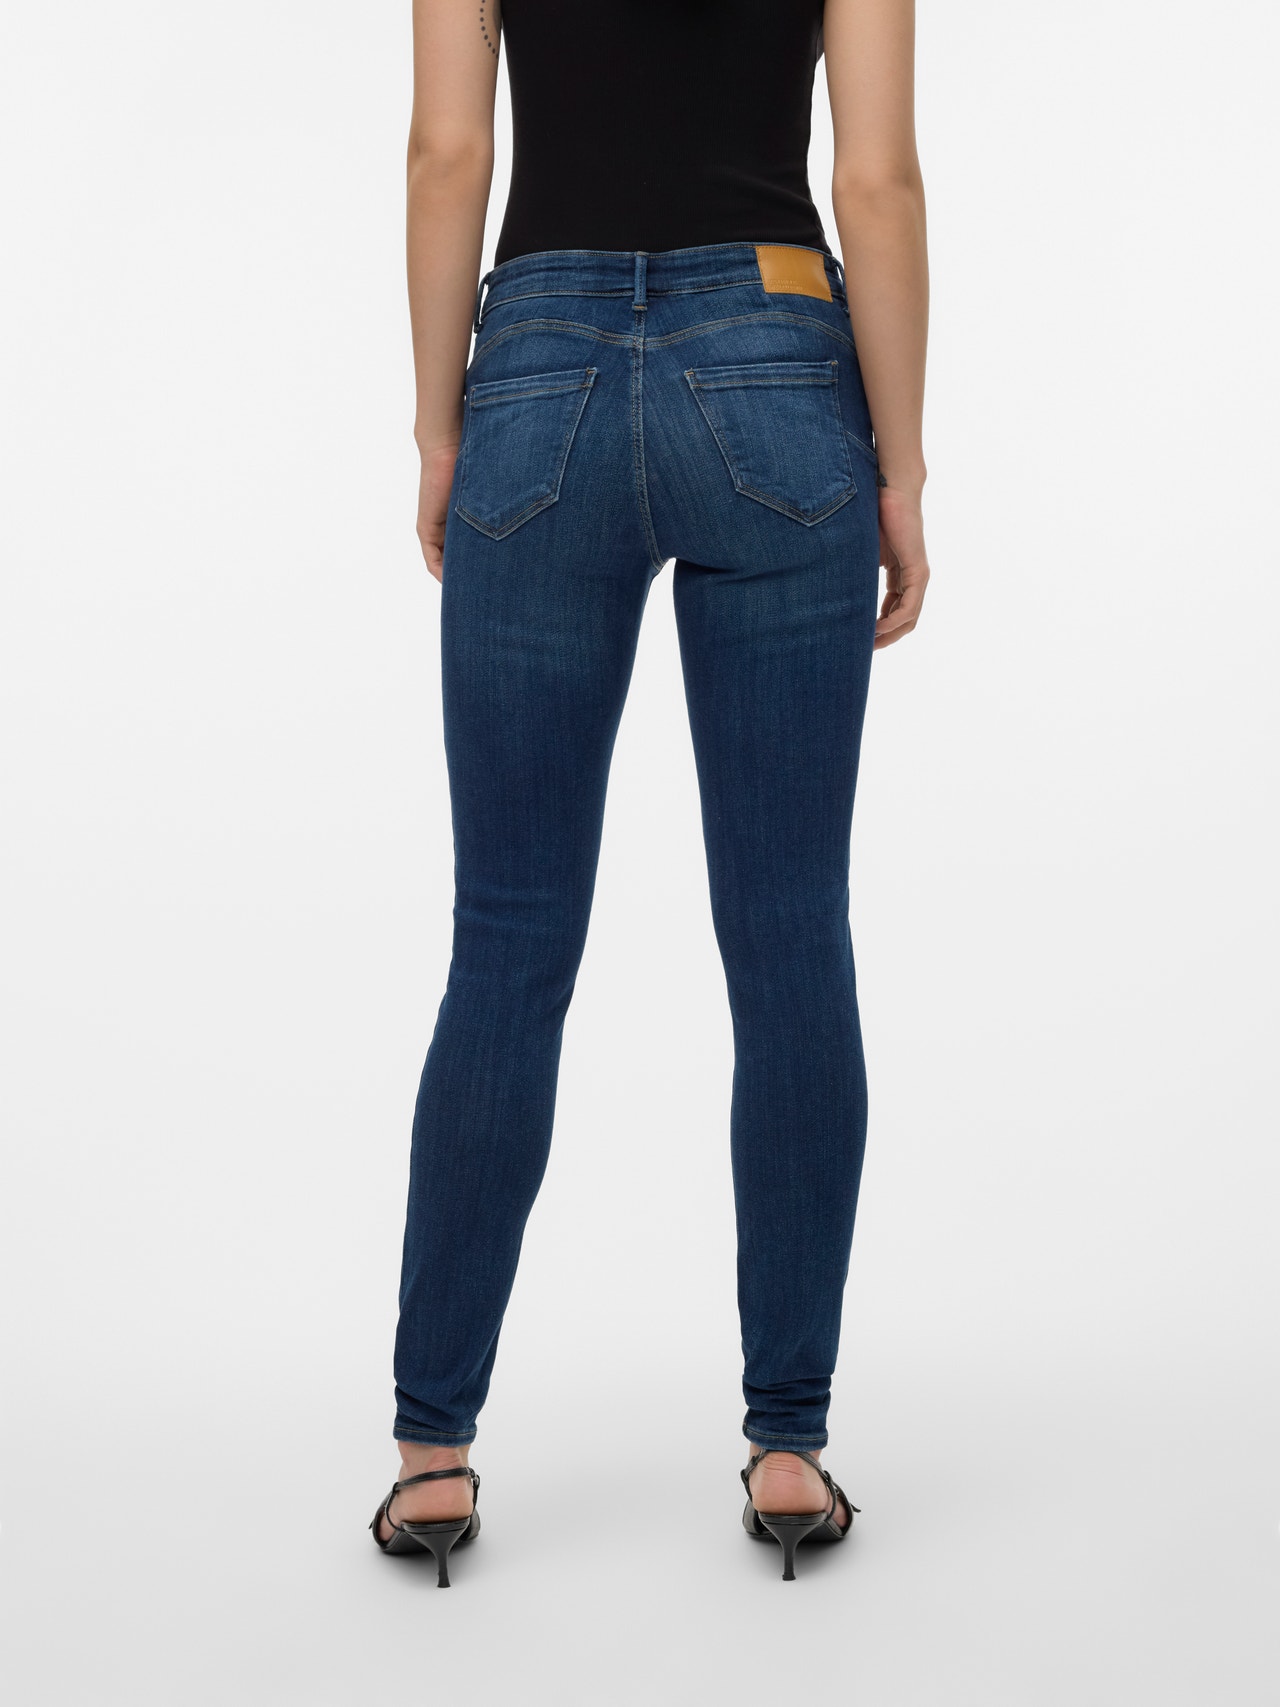 Vero Moda VMTANYA Vita media Skinny Fit Jeans -Dark Blue Denim - 10311369